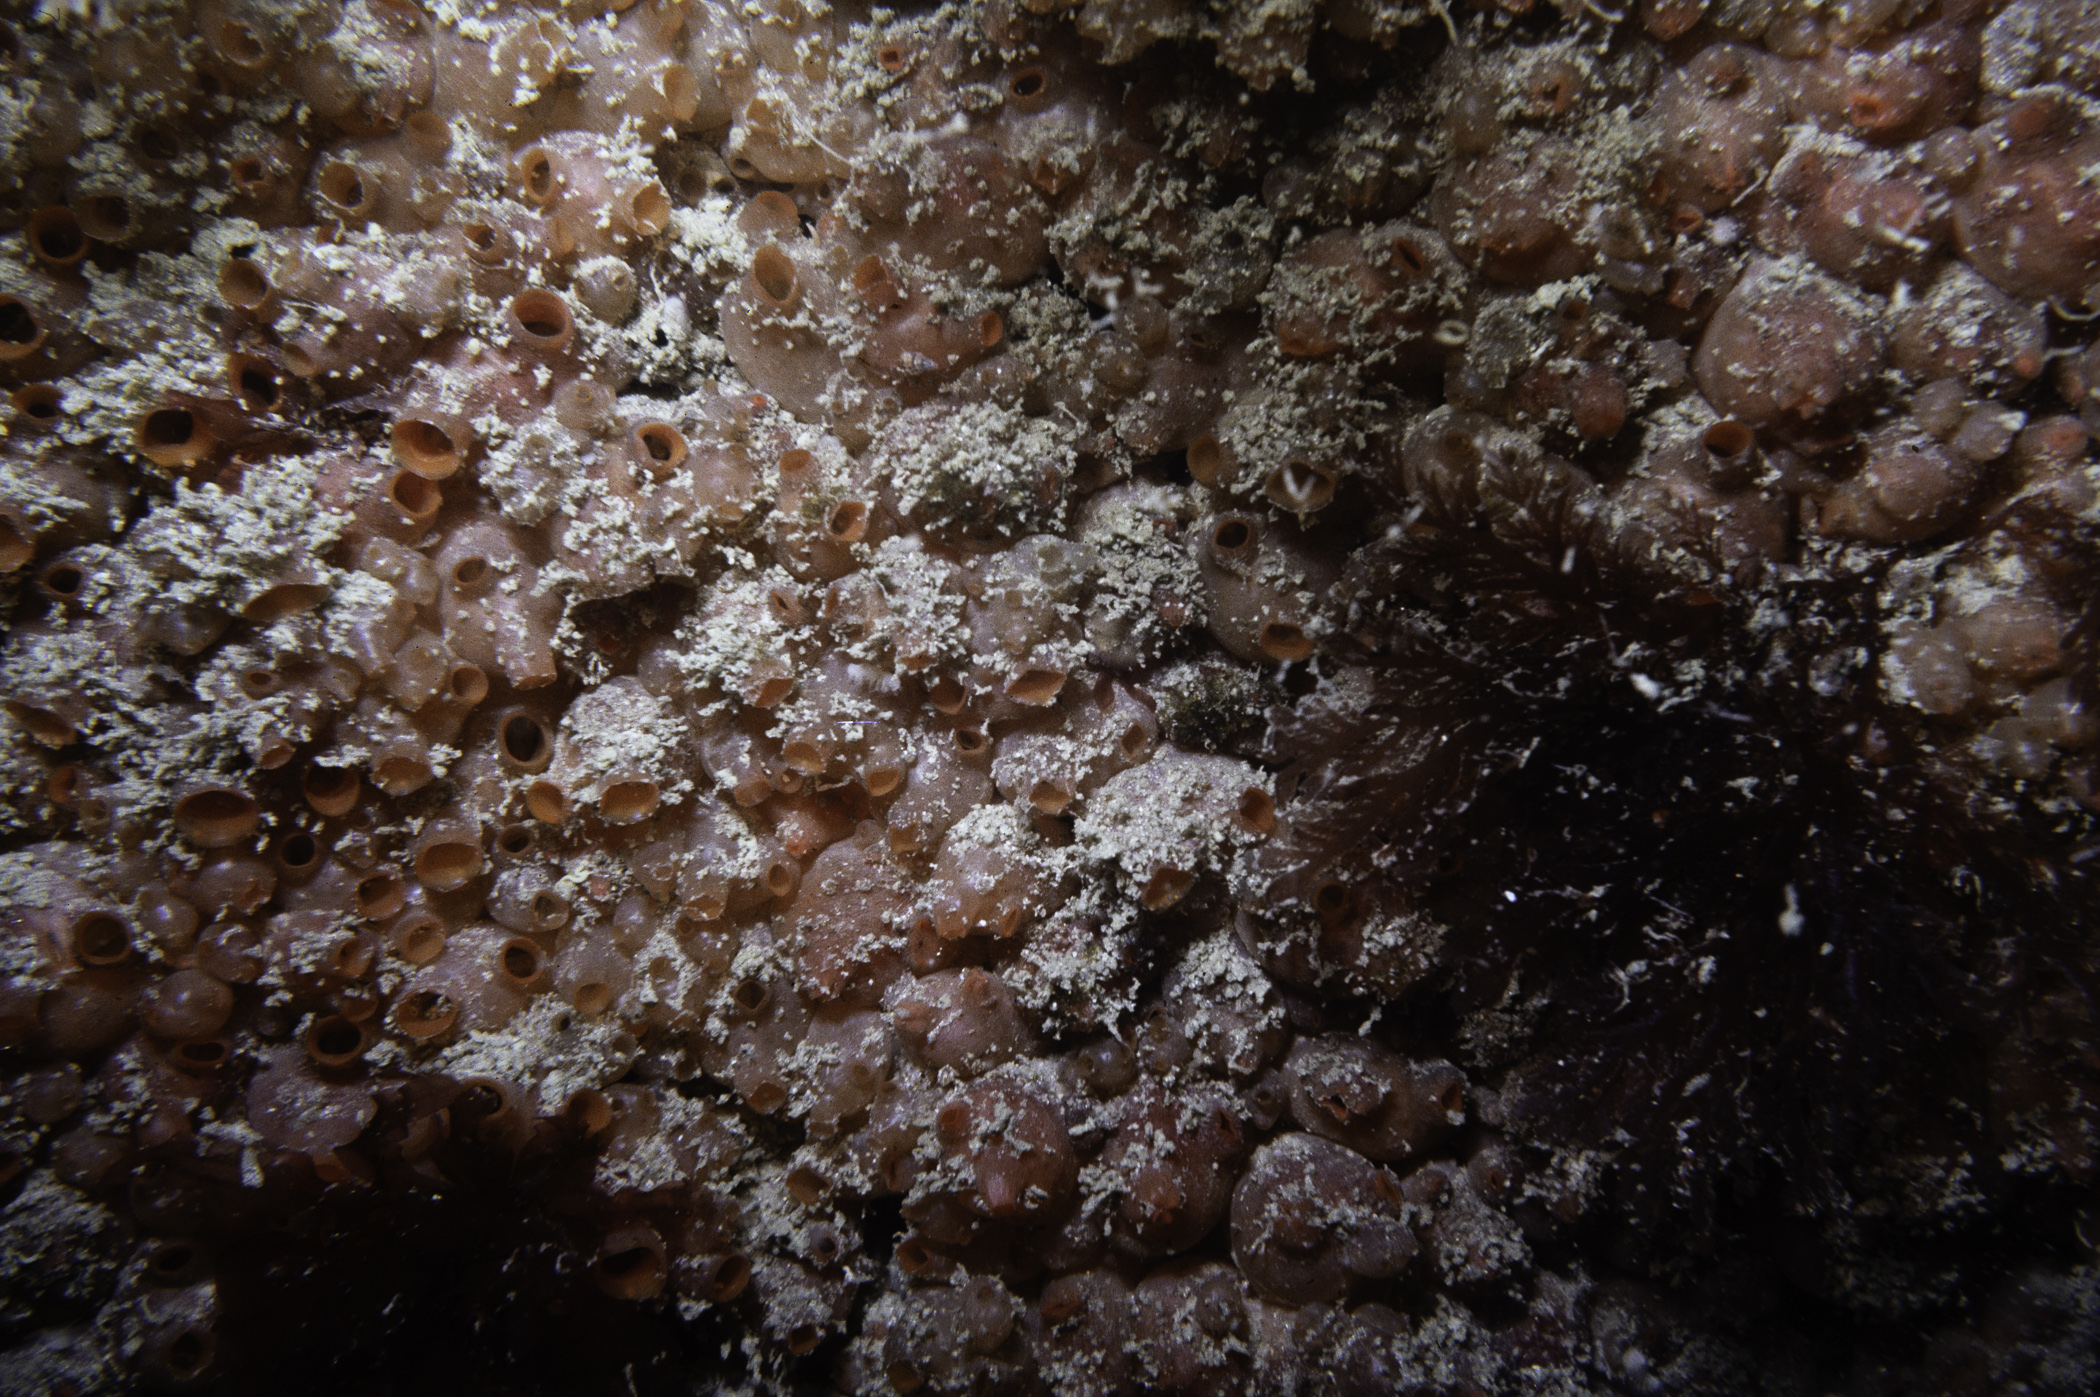 Dendrodoa grossularia, Plocamium cartilagineum. Site: 300m NE of Large Skerrie, Skerries, Portrush. 